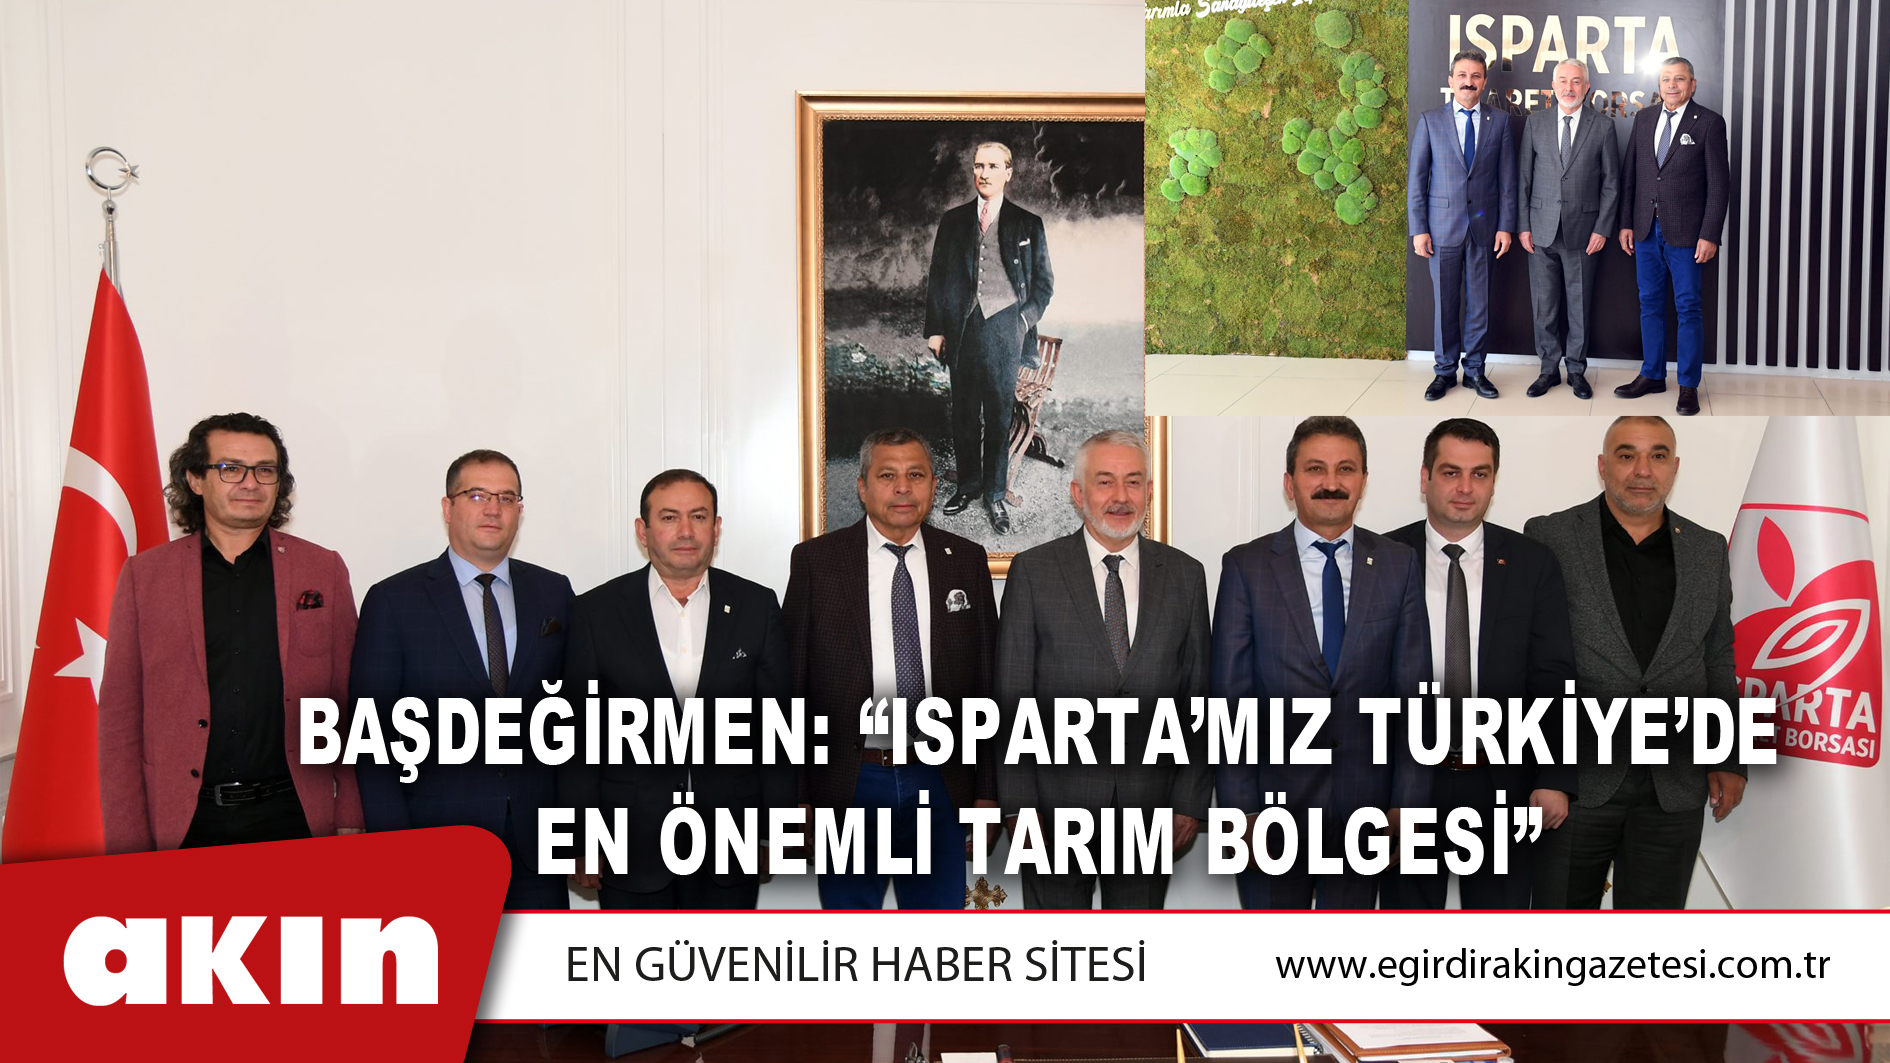 eğirdir haber,akın gazetesi,egirdir haberler,son dakika,Başdeğirmen: “Isparta’mız Türkiye’de En Önemli Tarım Bölgesi”